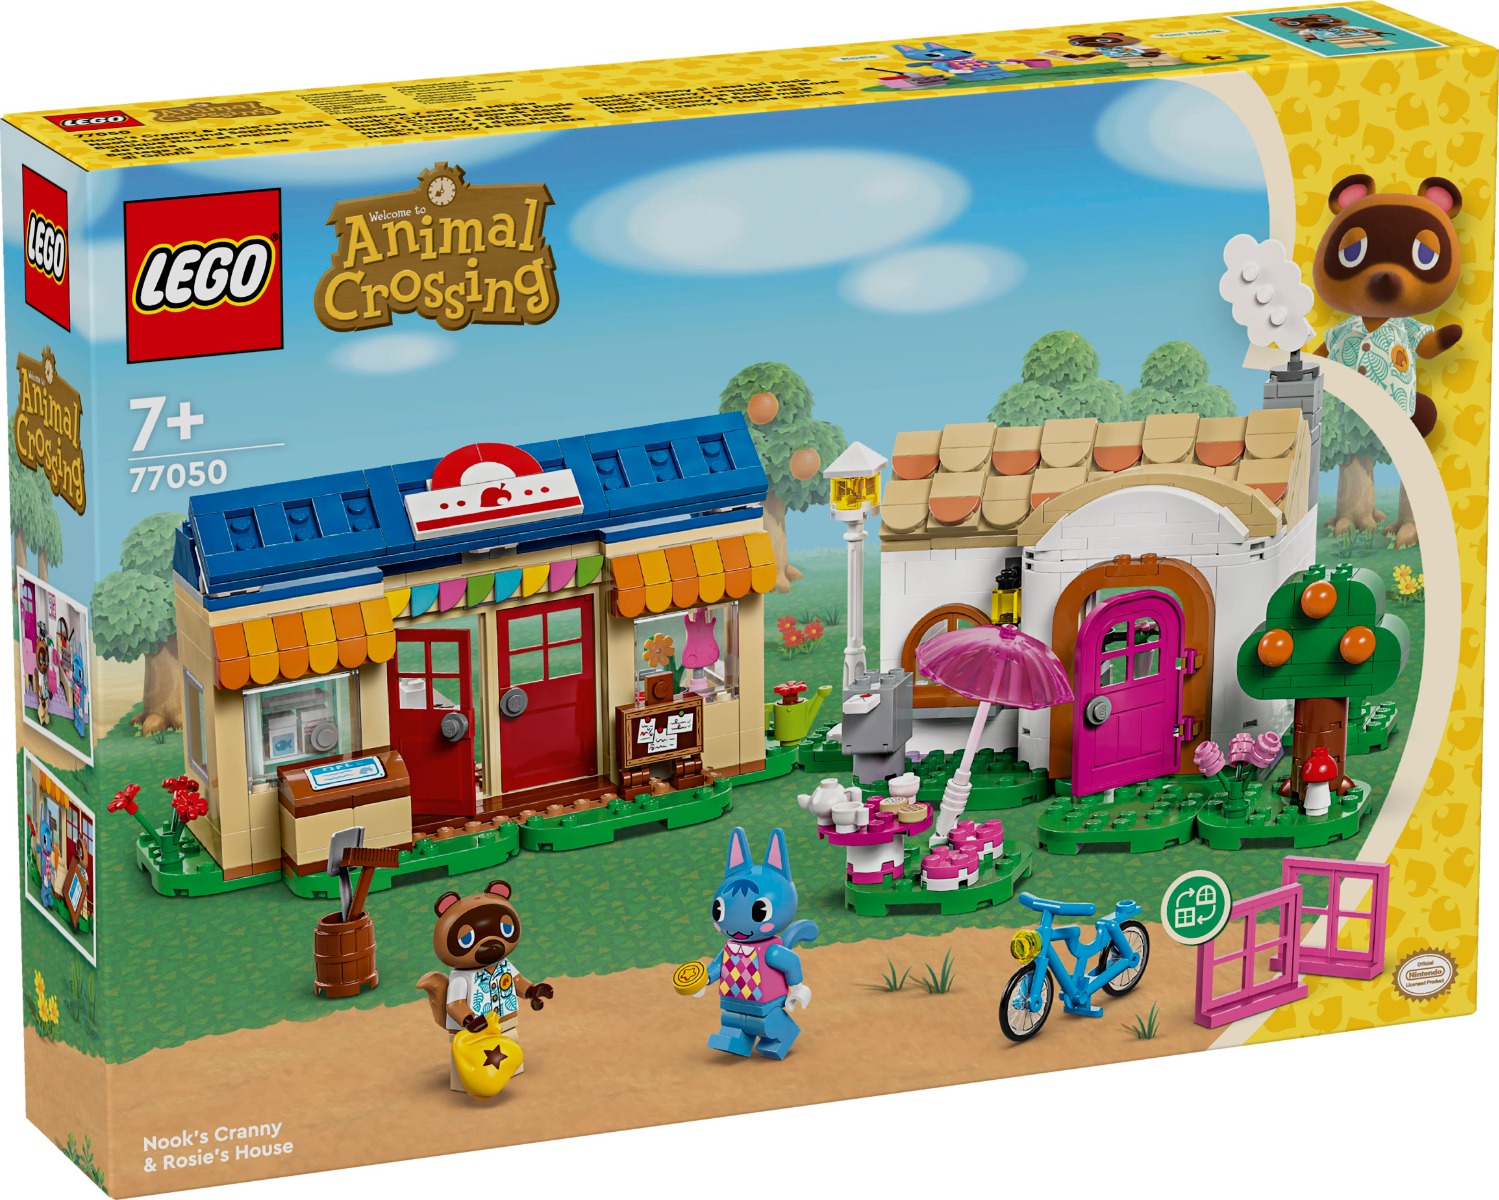 Poze LEGO® Animal Crossing - Nook's Cranny si casa lui Rosie (77050) noriel.ro 